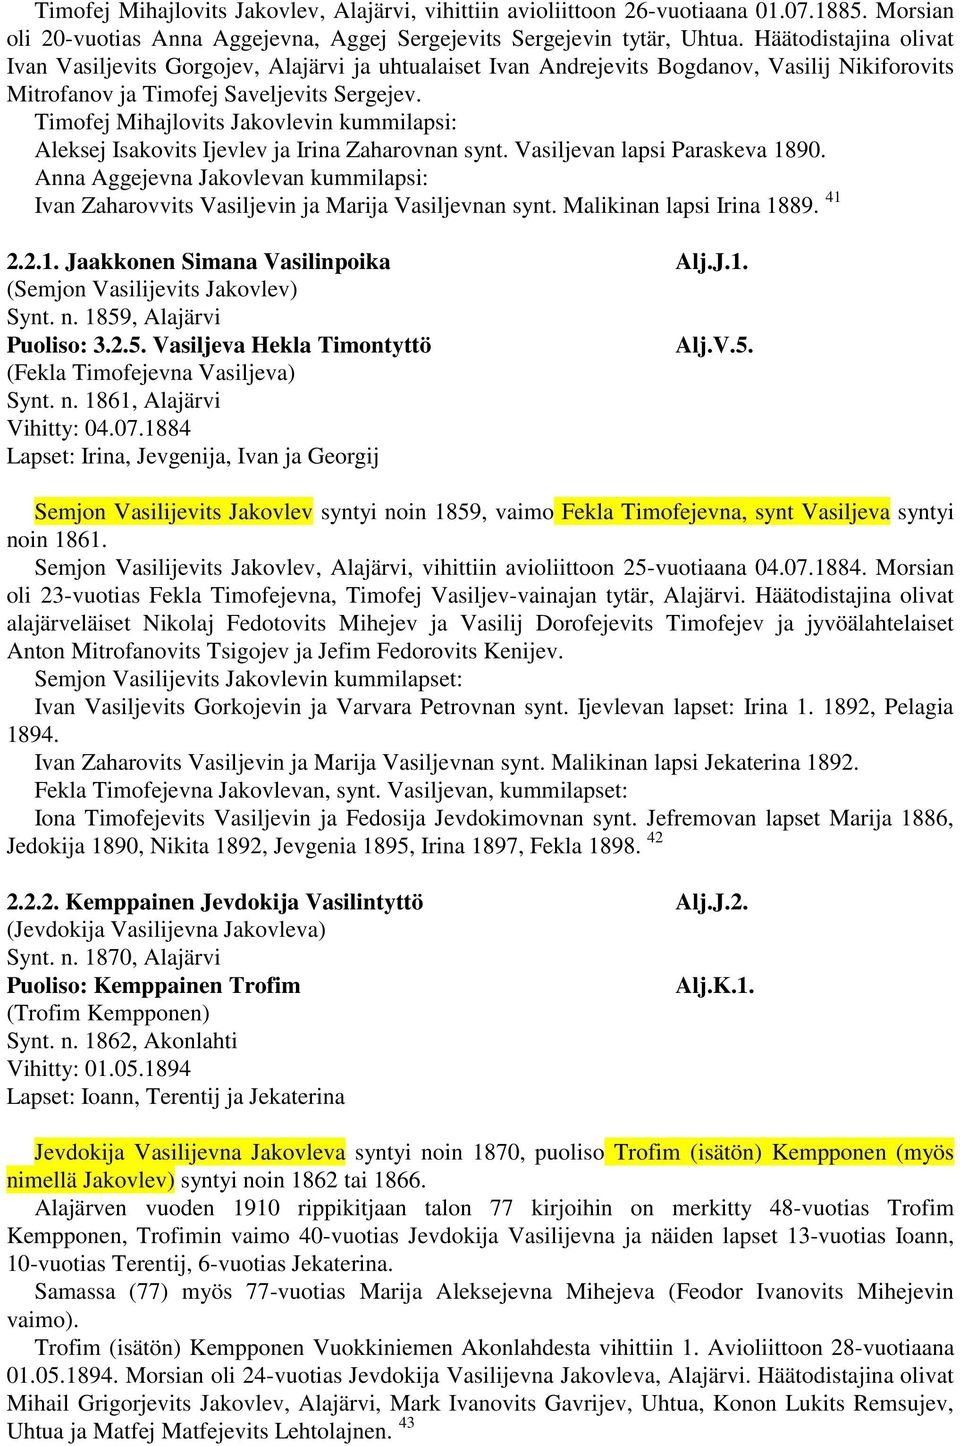 Timofej Mihajlovits Jakovlevin kummilapsi: Aleksej Isakovits Ijevlev ja Irina Zaharovnan synt. Vasiljevan lapsi Paraskeva 1890.